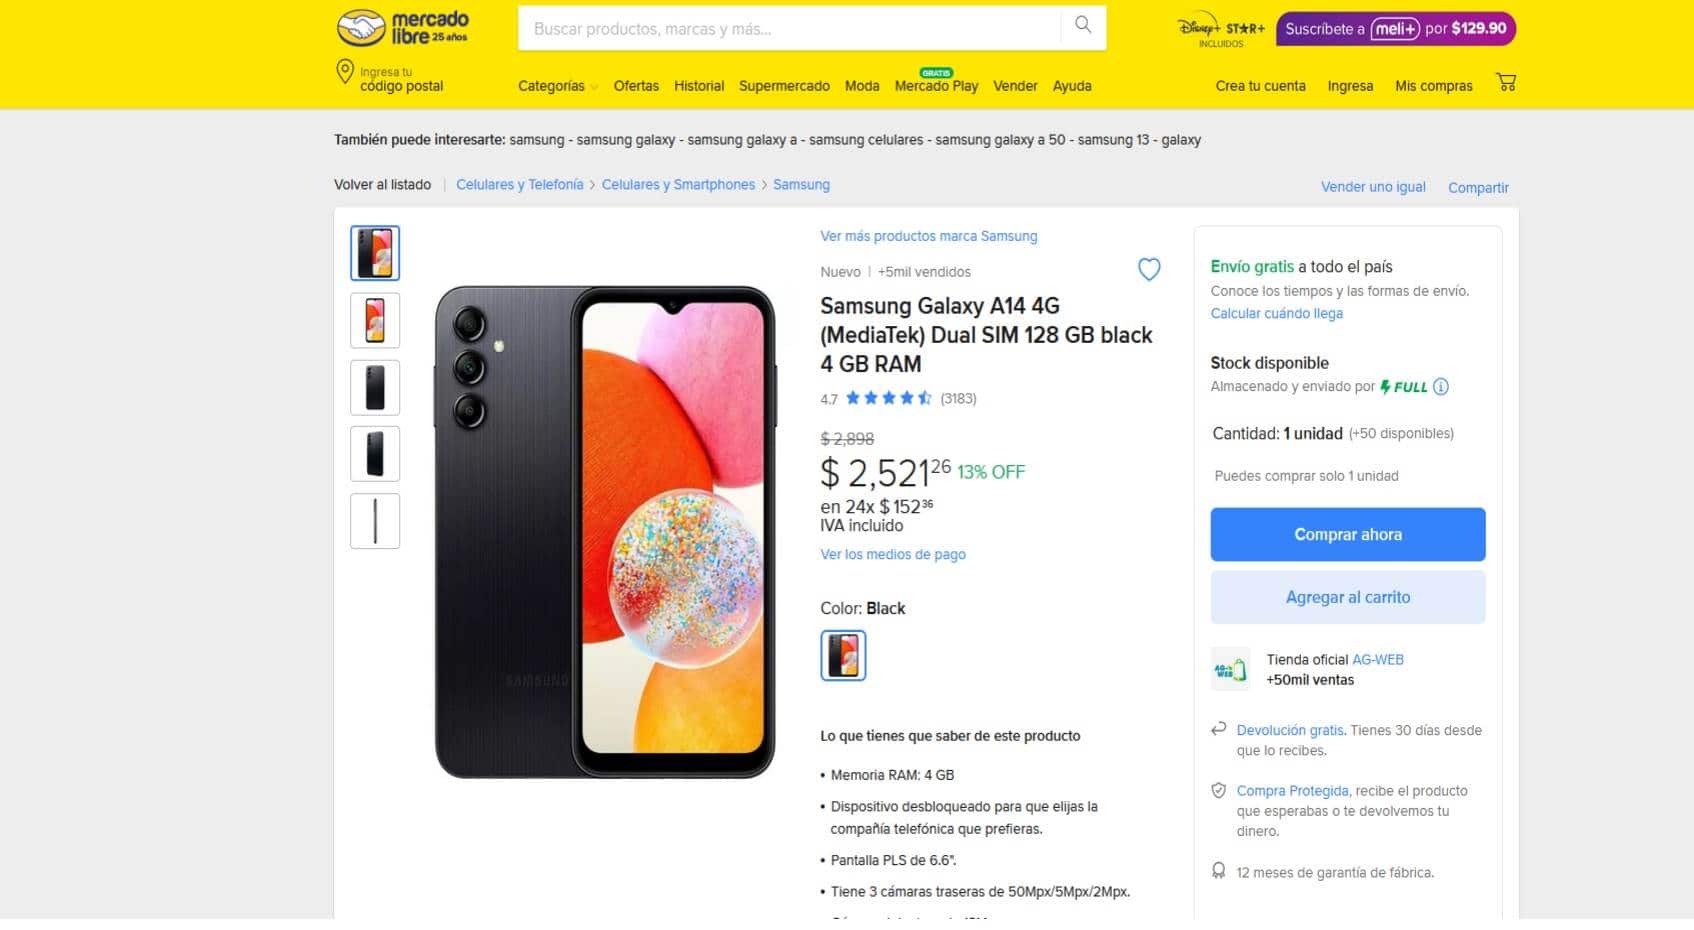 Cuánto cuesta el smartphone Samsung Galaxy A14 en Mercado Libre